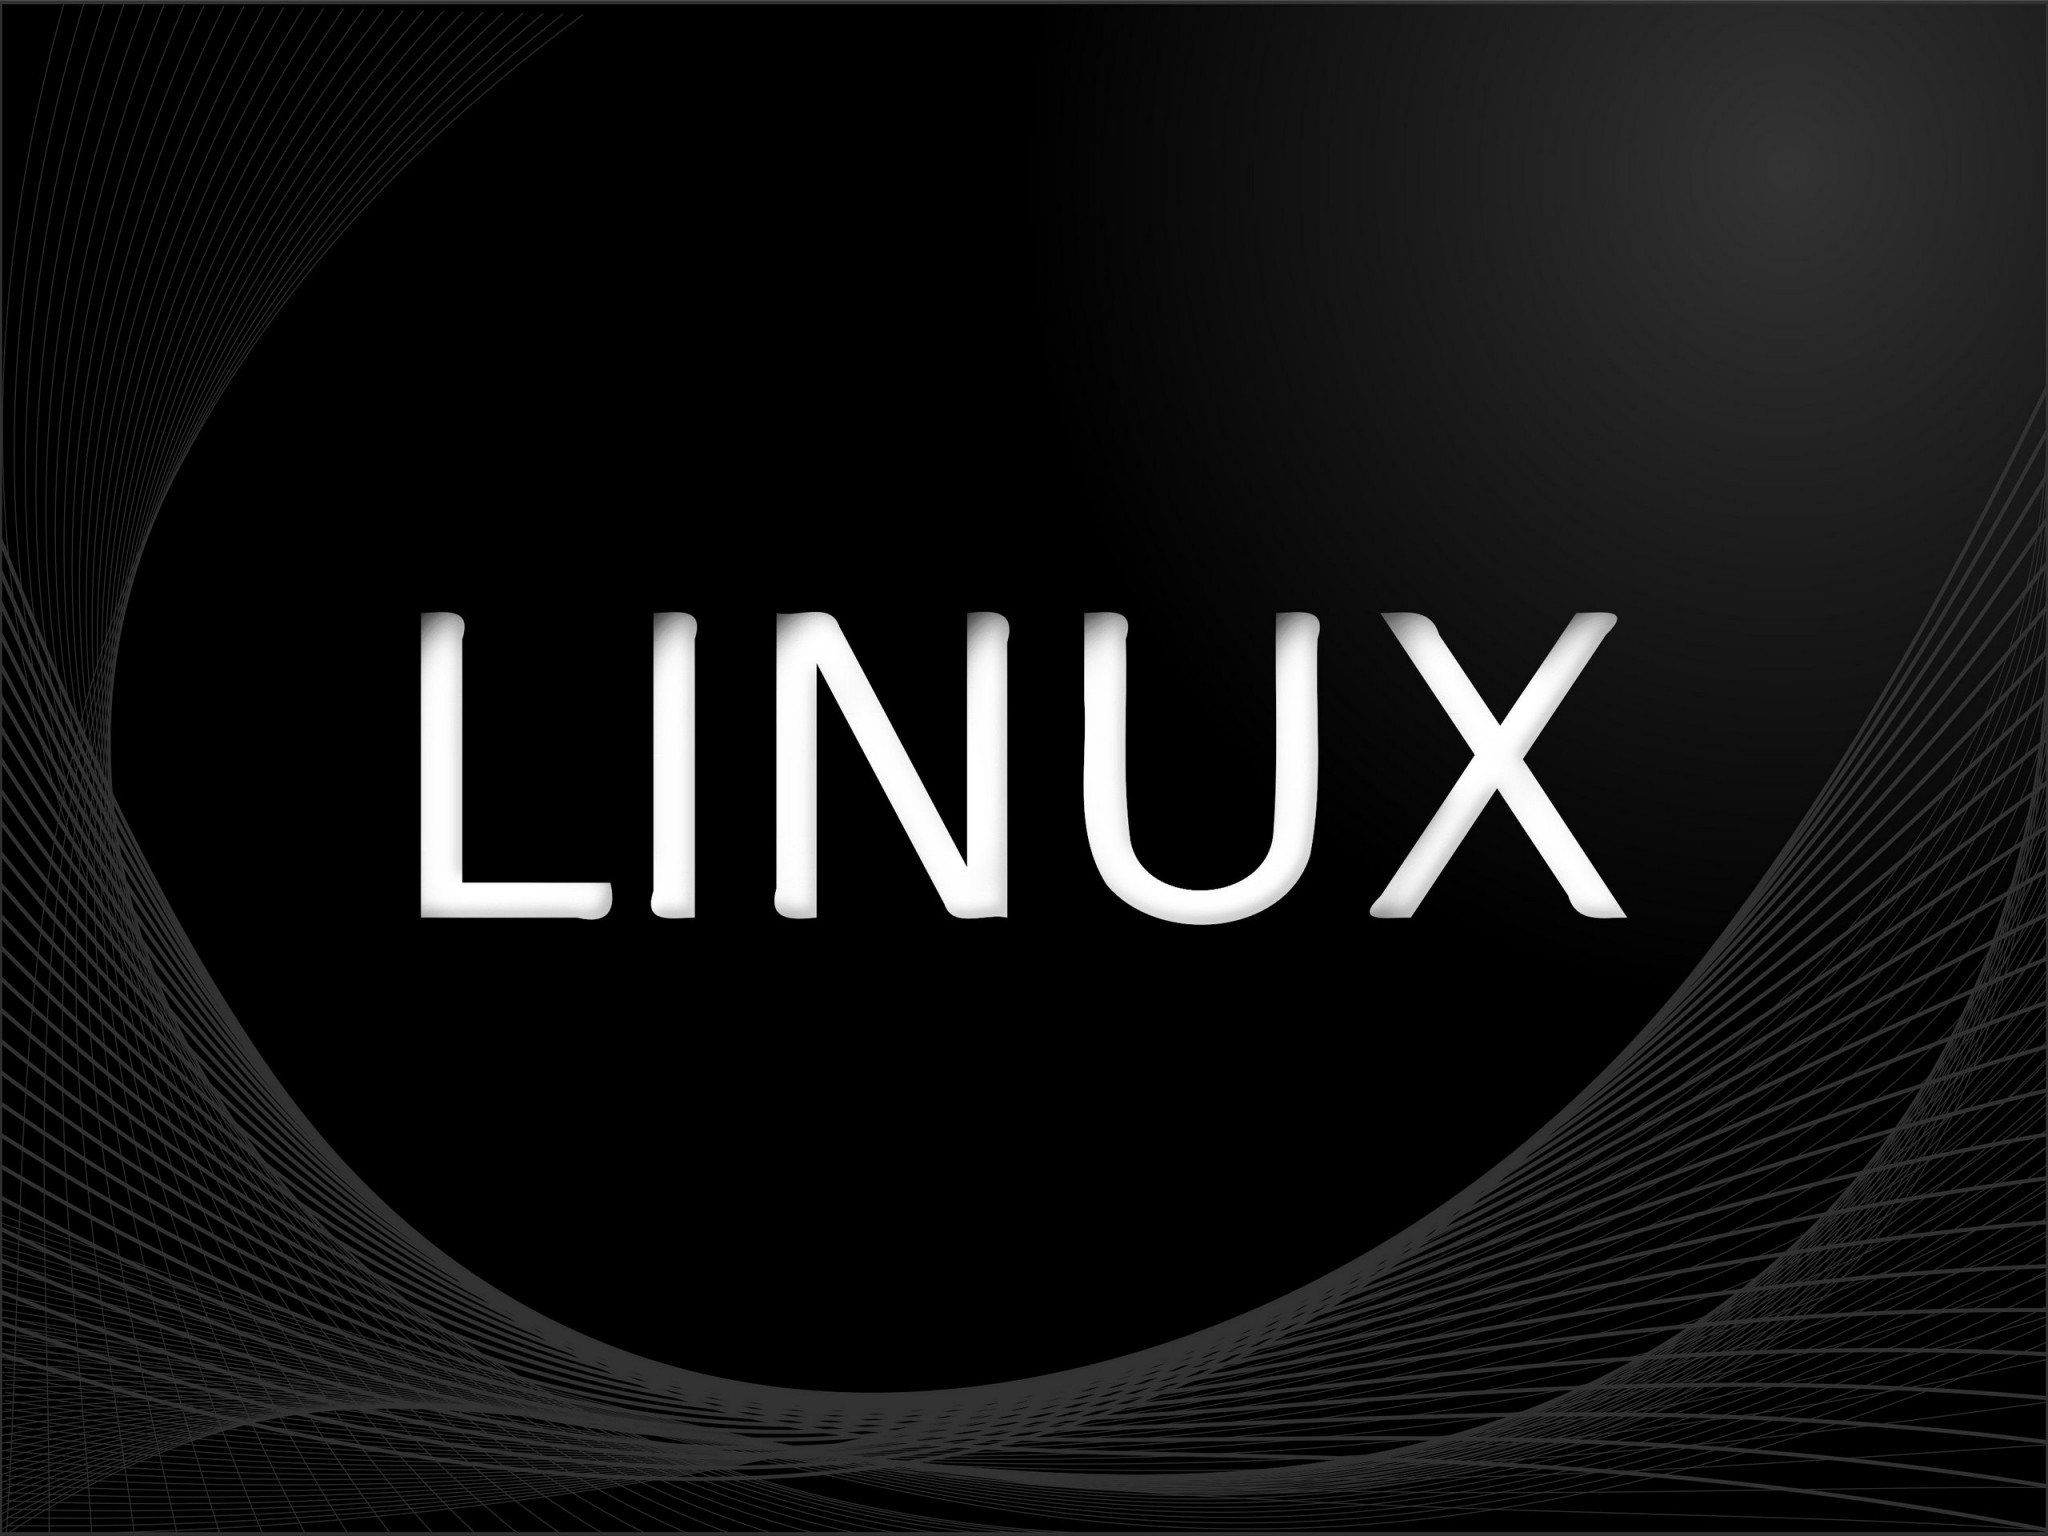 Linuxová tapeta 2048x1536. Tapeta, pozadí na plochu PC. Obrázek ke stažení zdarma